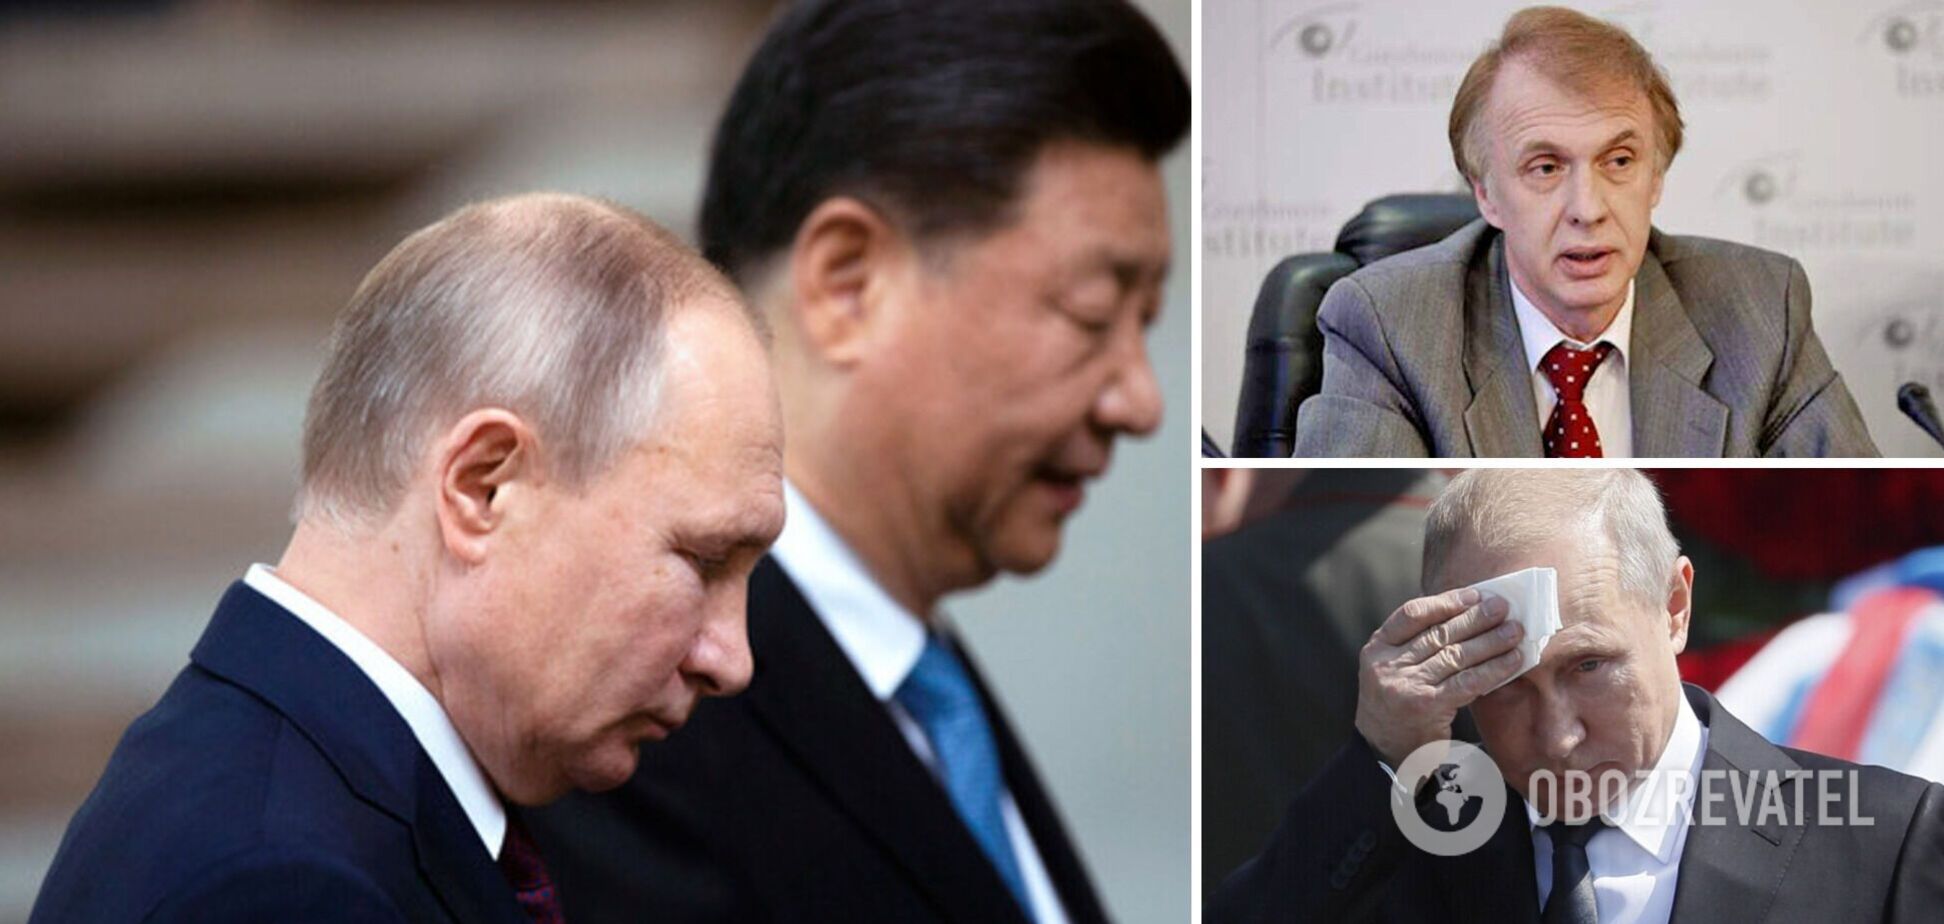 Огризко: величезне приниження Путіна. Для чого Сі Цзіньпін приїхав до Москви. Інтерв’ю